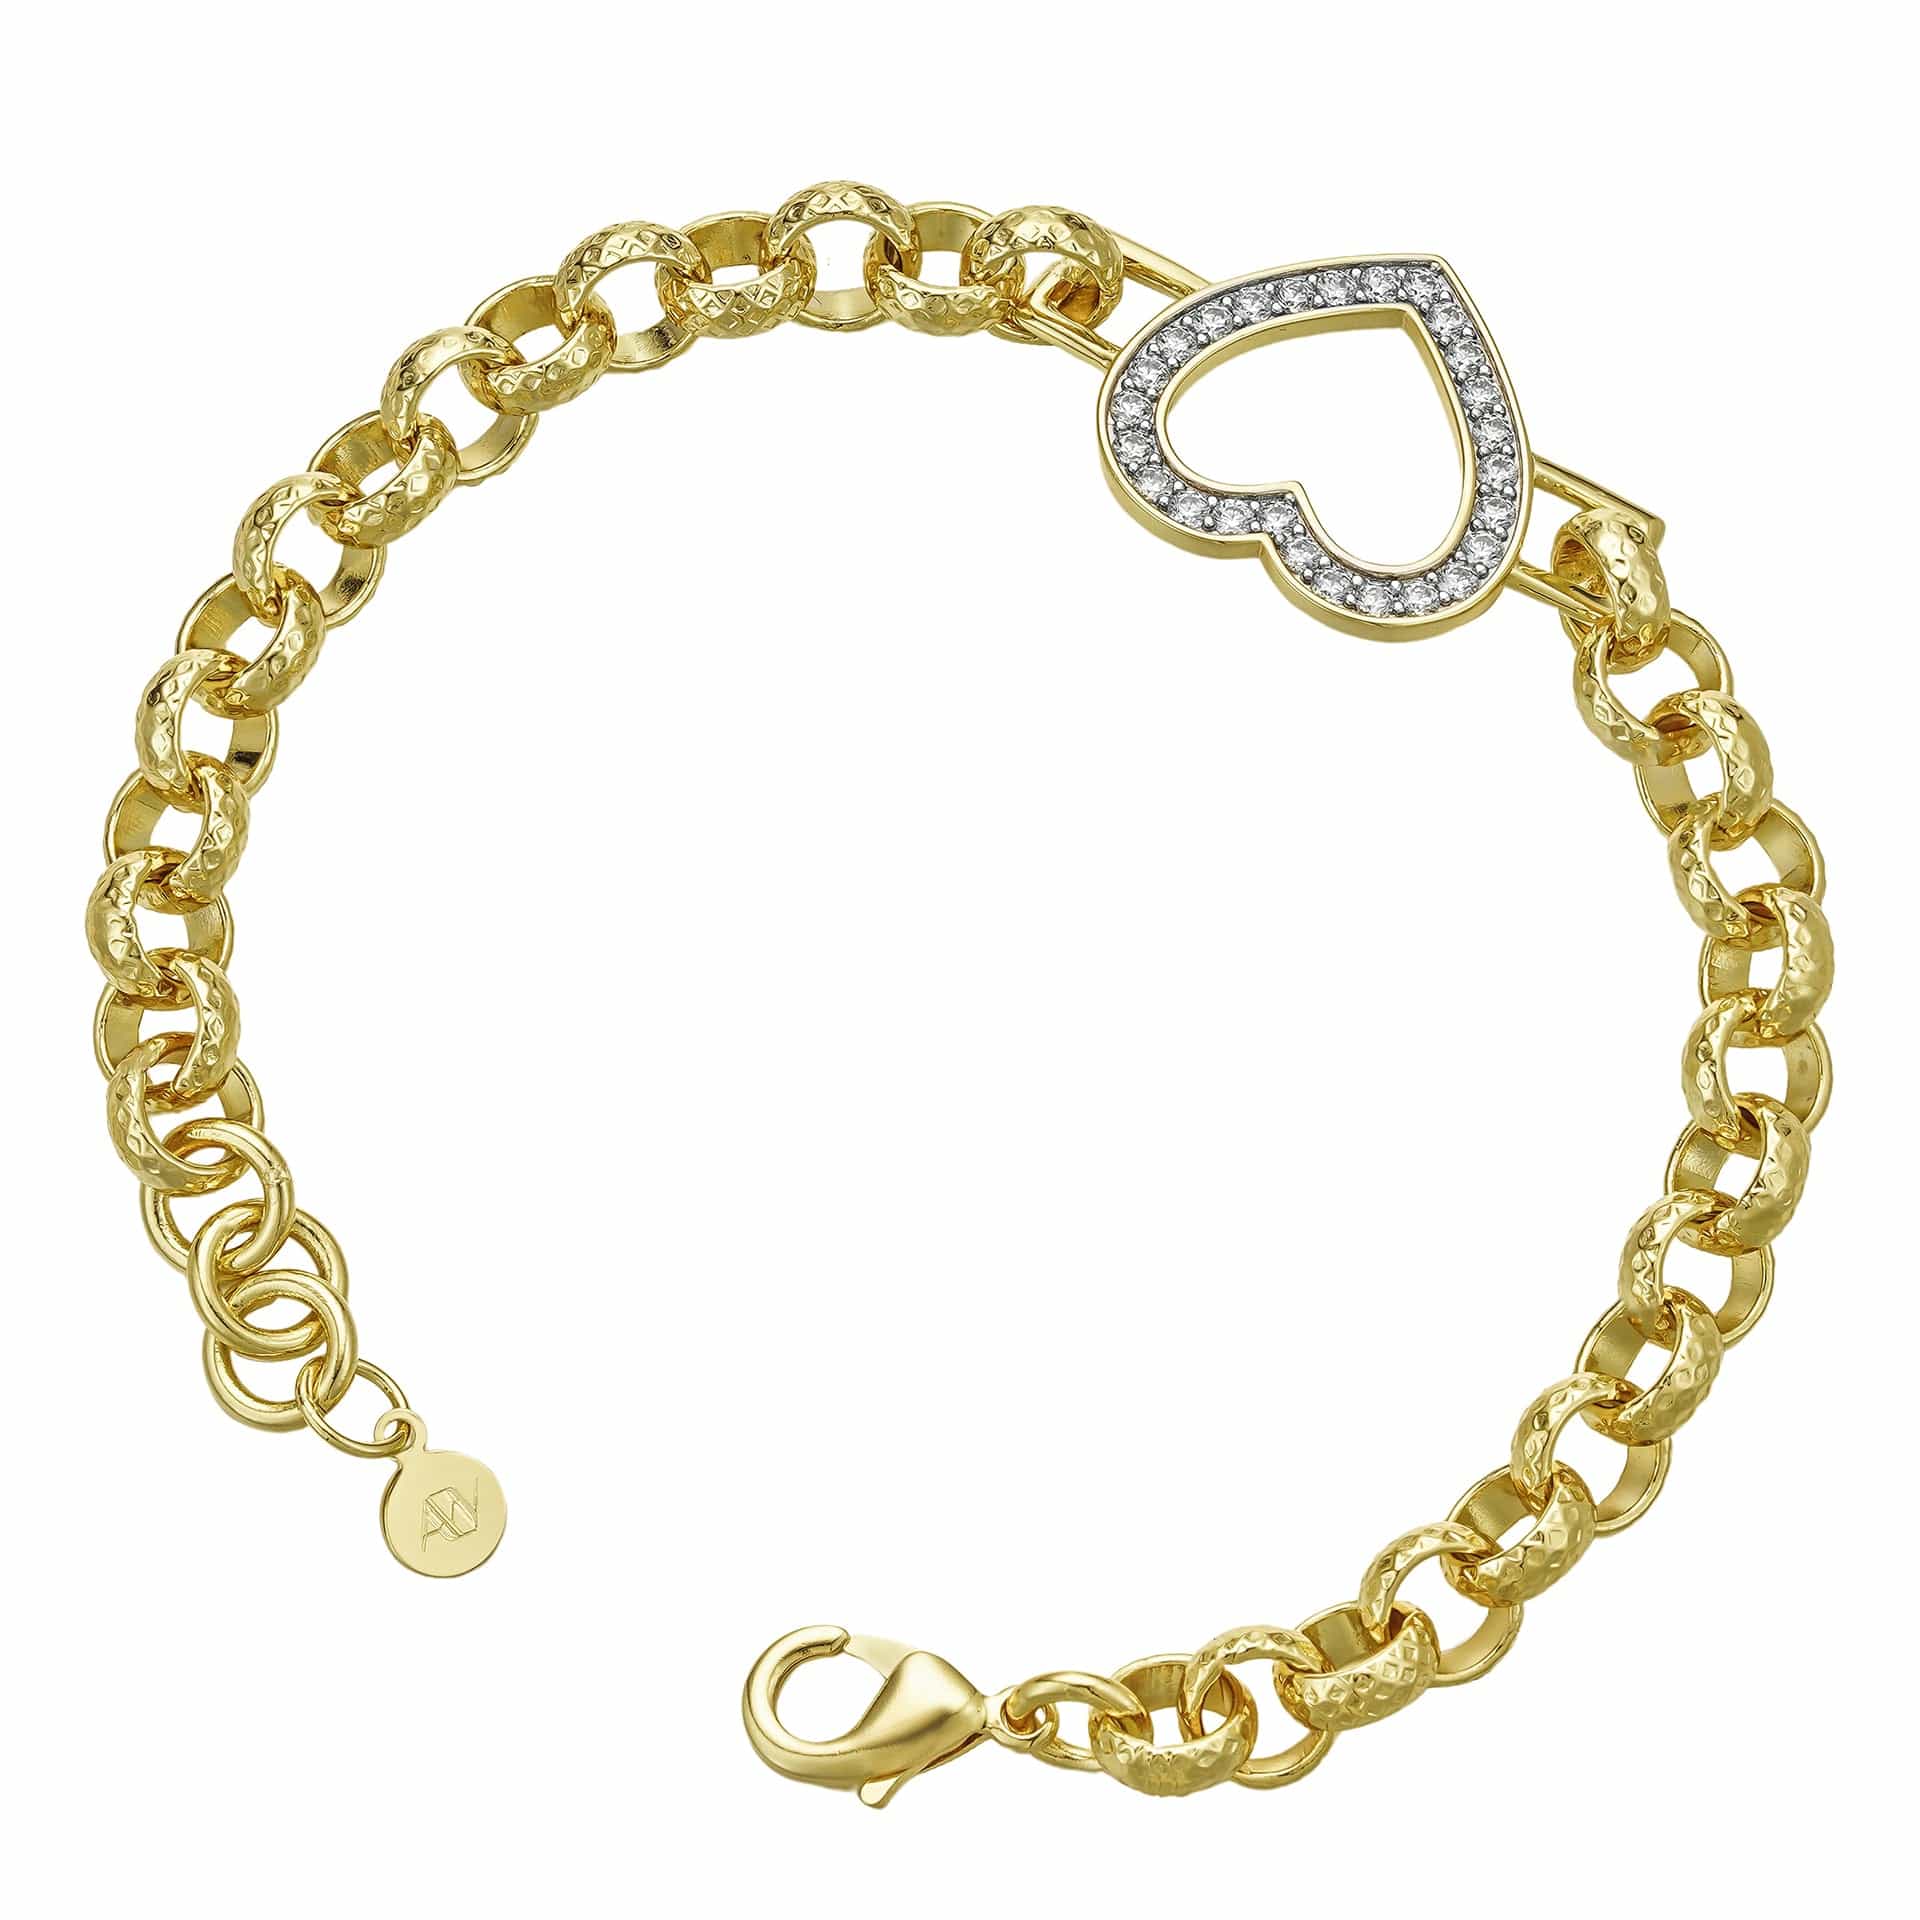 All Wear Jewellery Diamond Patterned Heart Bracelet 8mm - Gold